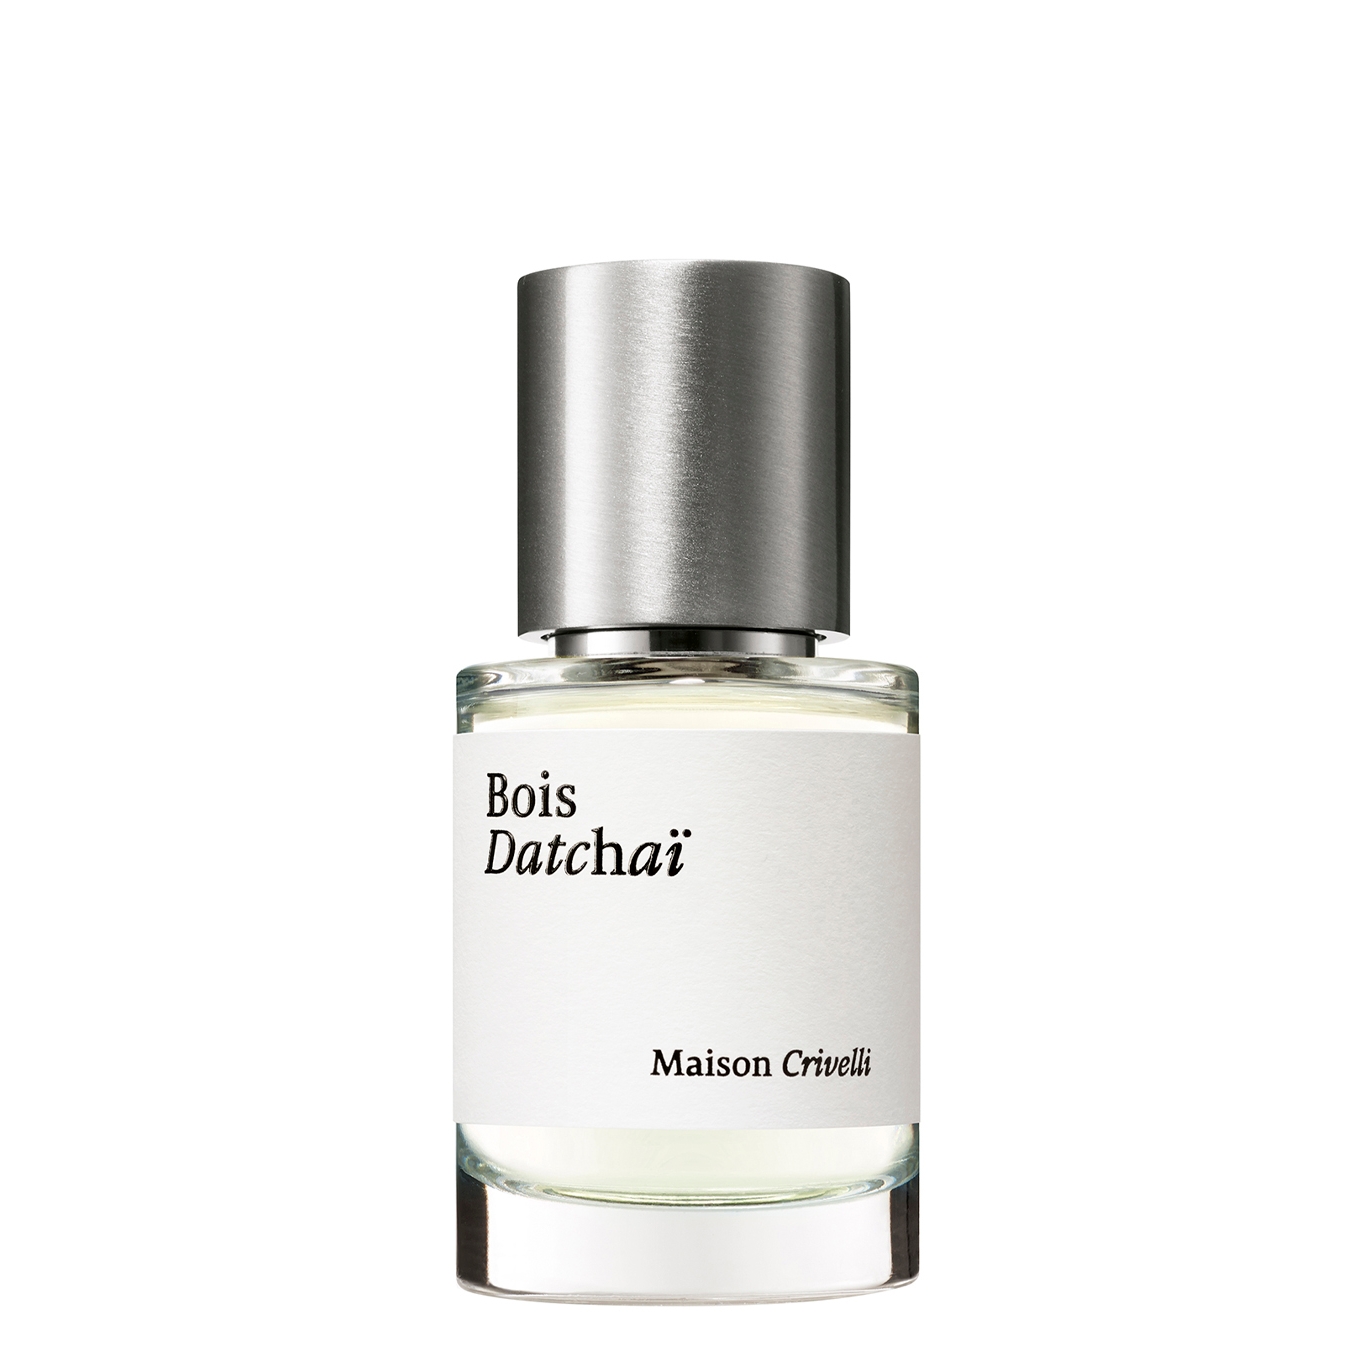 Maison Crivelli Bois Datchaï Eau De Parfum 30ml